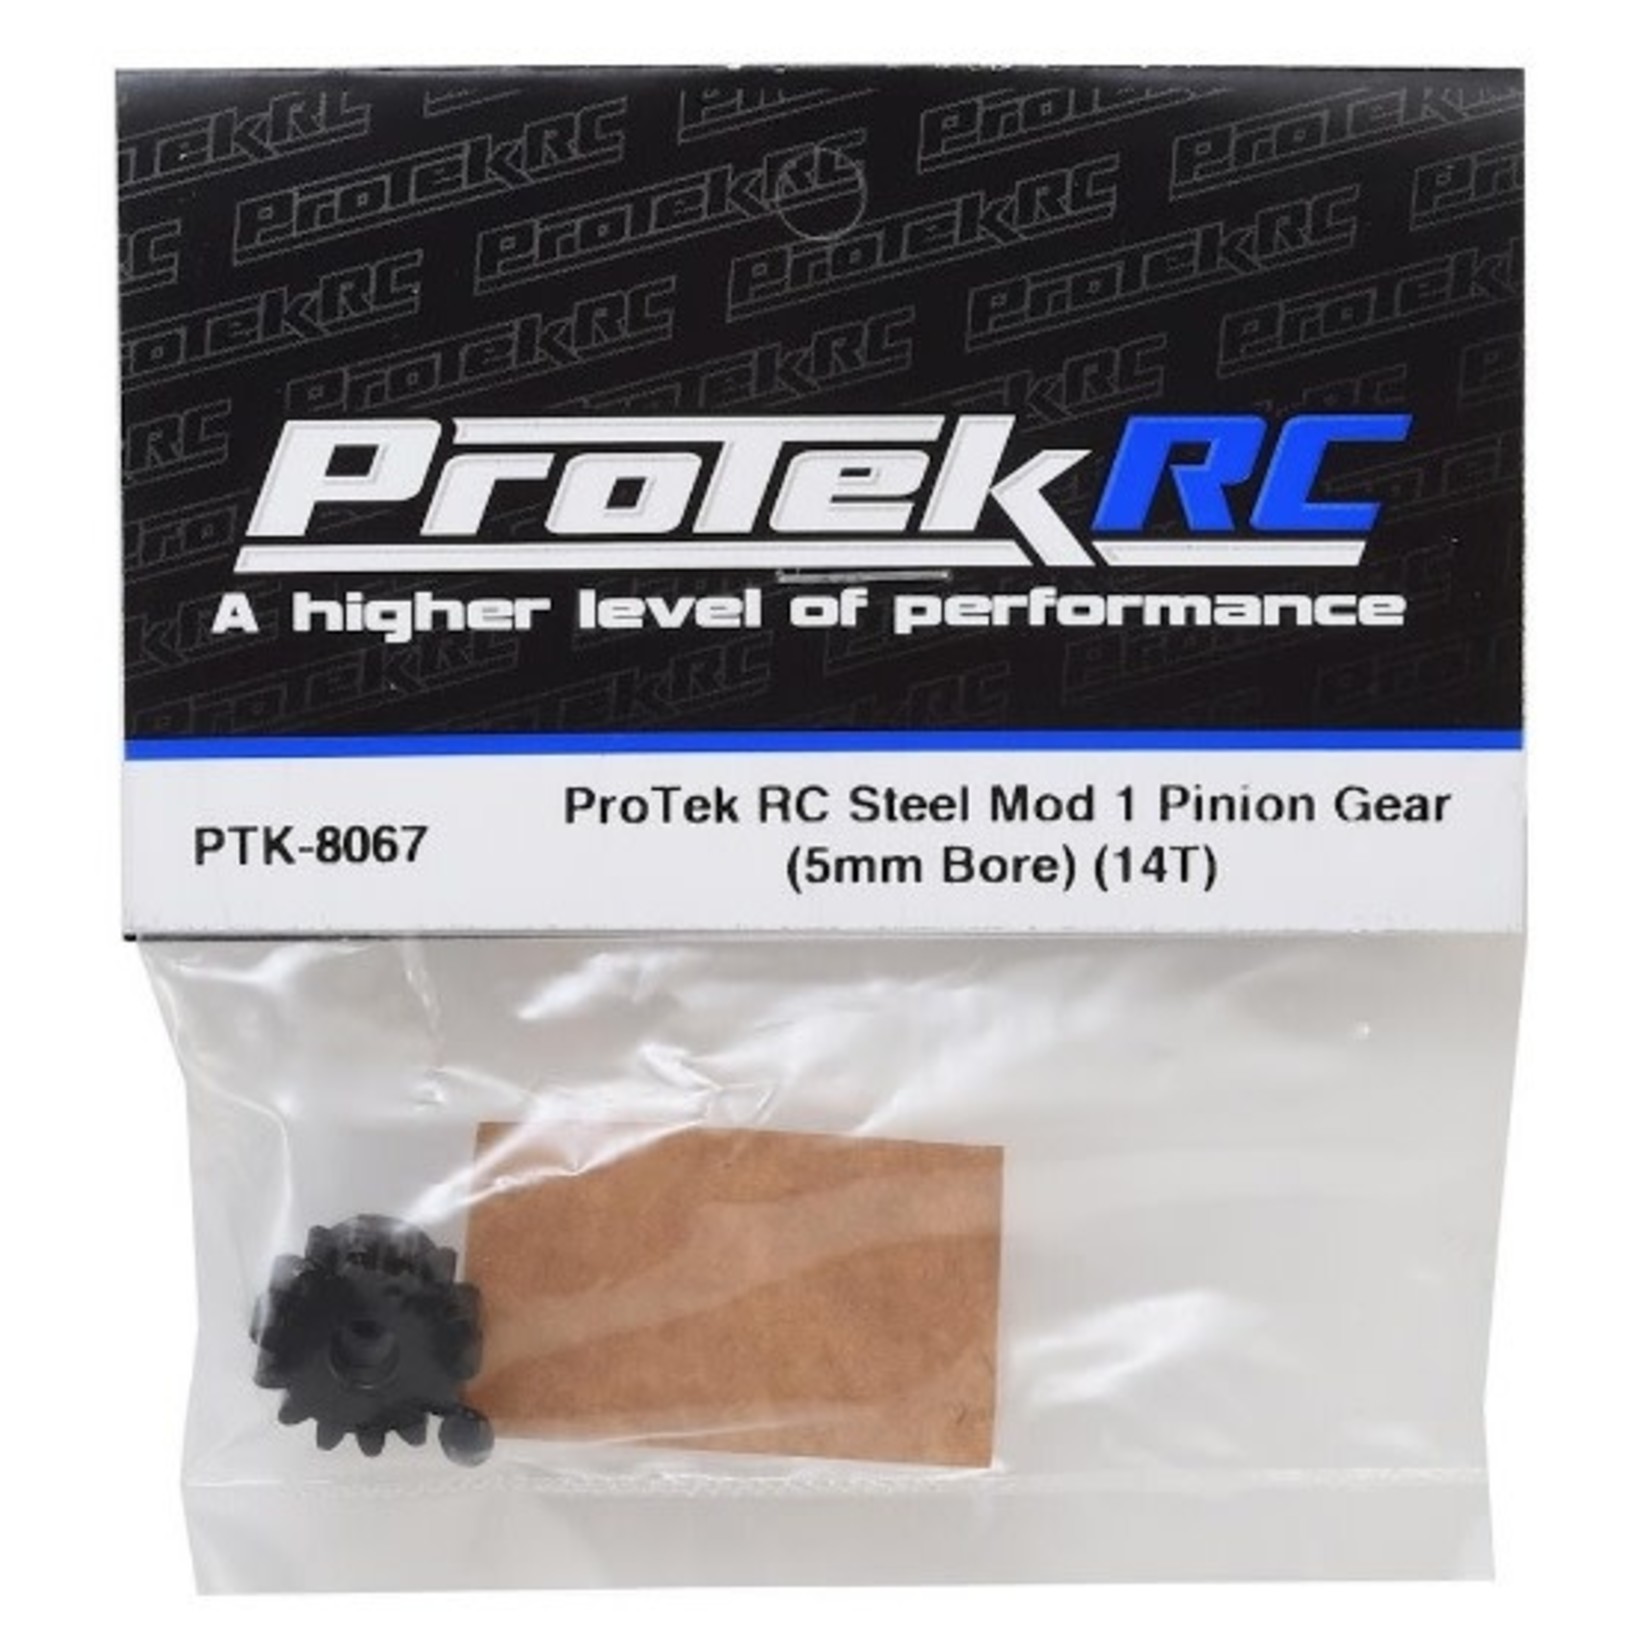 ProTek RC ProTek RC Steel Mod 1 Pinion Gear (5mm Bore) (14T) #PTK-8067